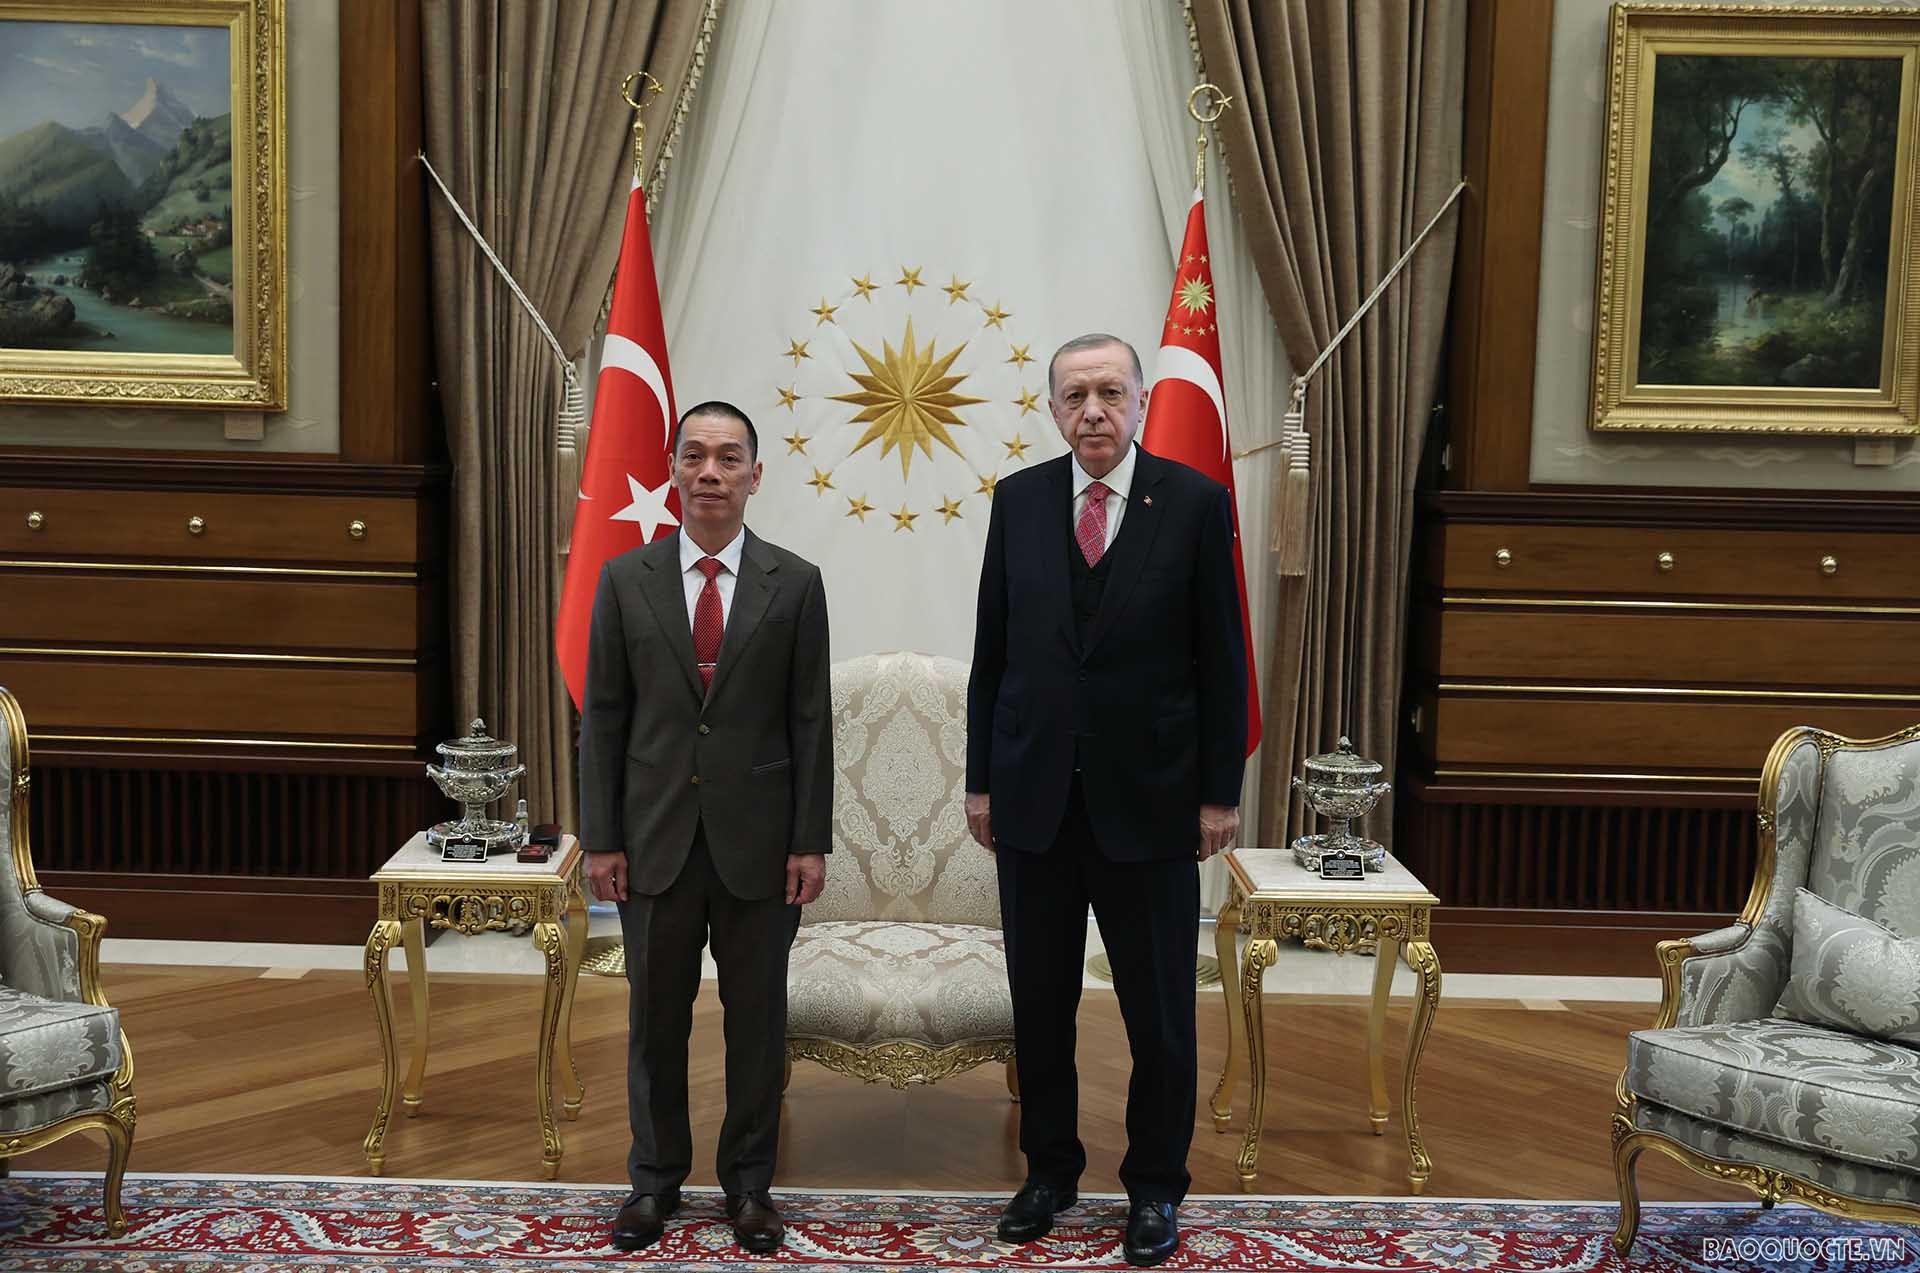 Đại sứ Việt Nam tại Thổ Nhĩ Kỳ Đỗ Sơn Hải trình Thư ủy nhiệm lên Tổng thống Thổ Nhĩ Kỳ Recep Tayyip Erdogan. 